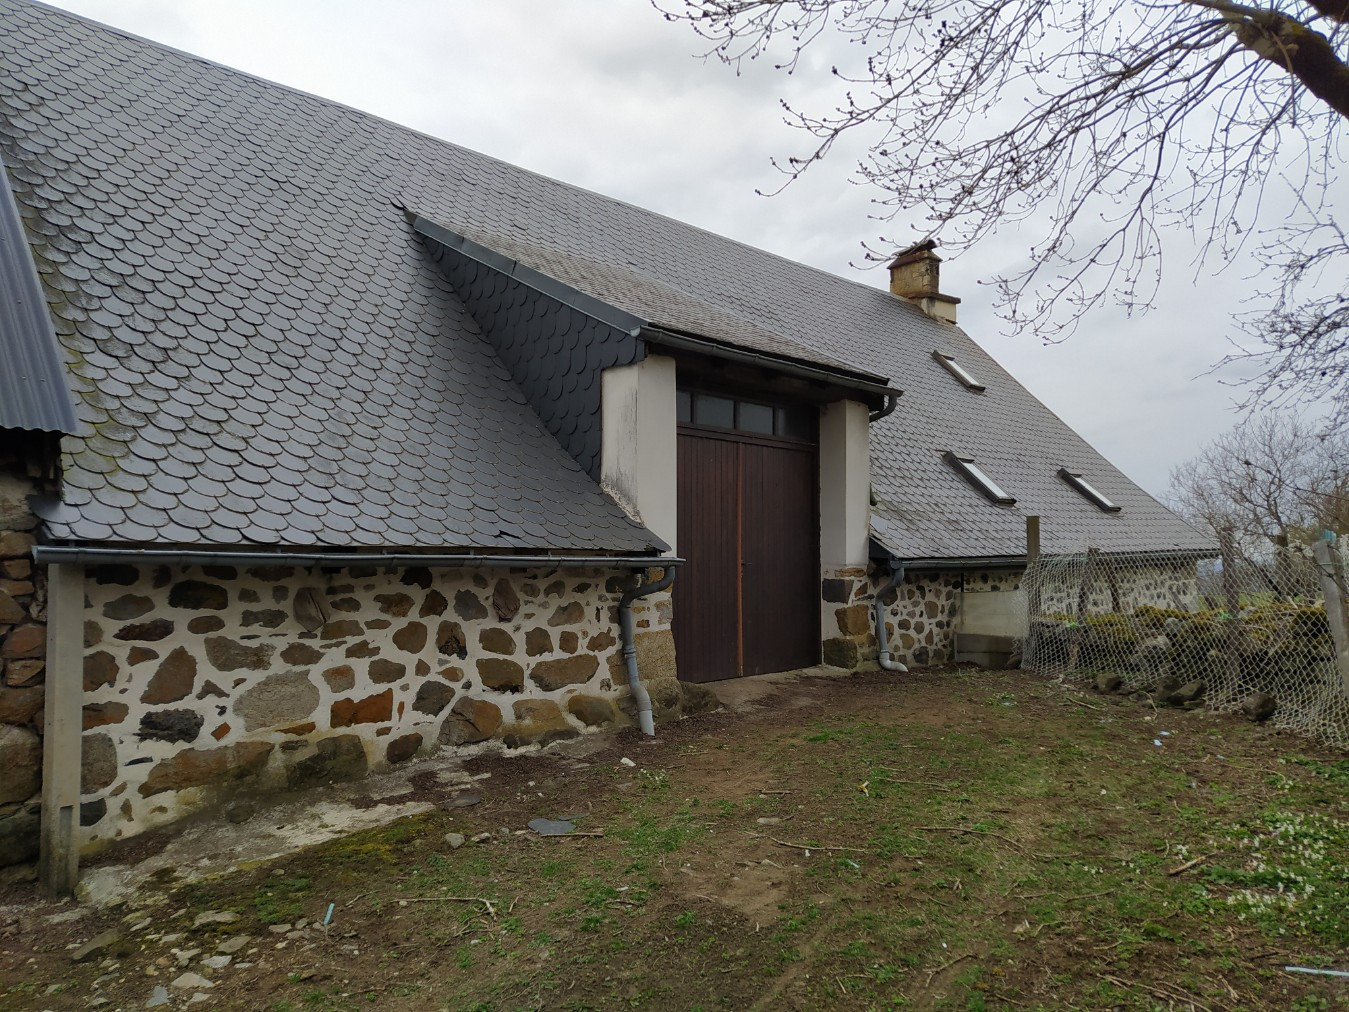 
                                                Vente
                                                 Maison dans le Cantal (Lot)